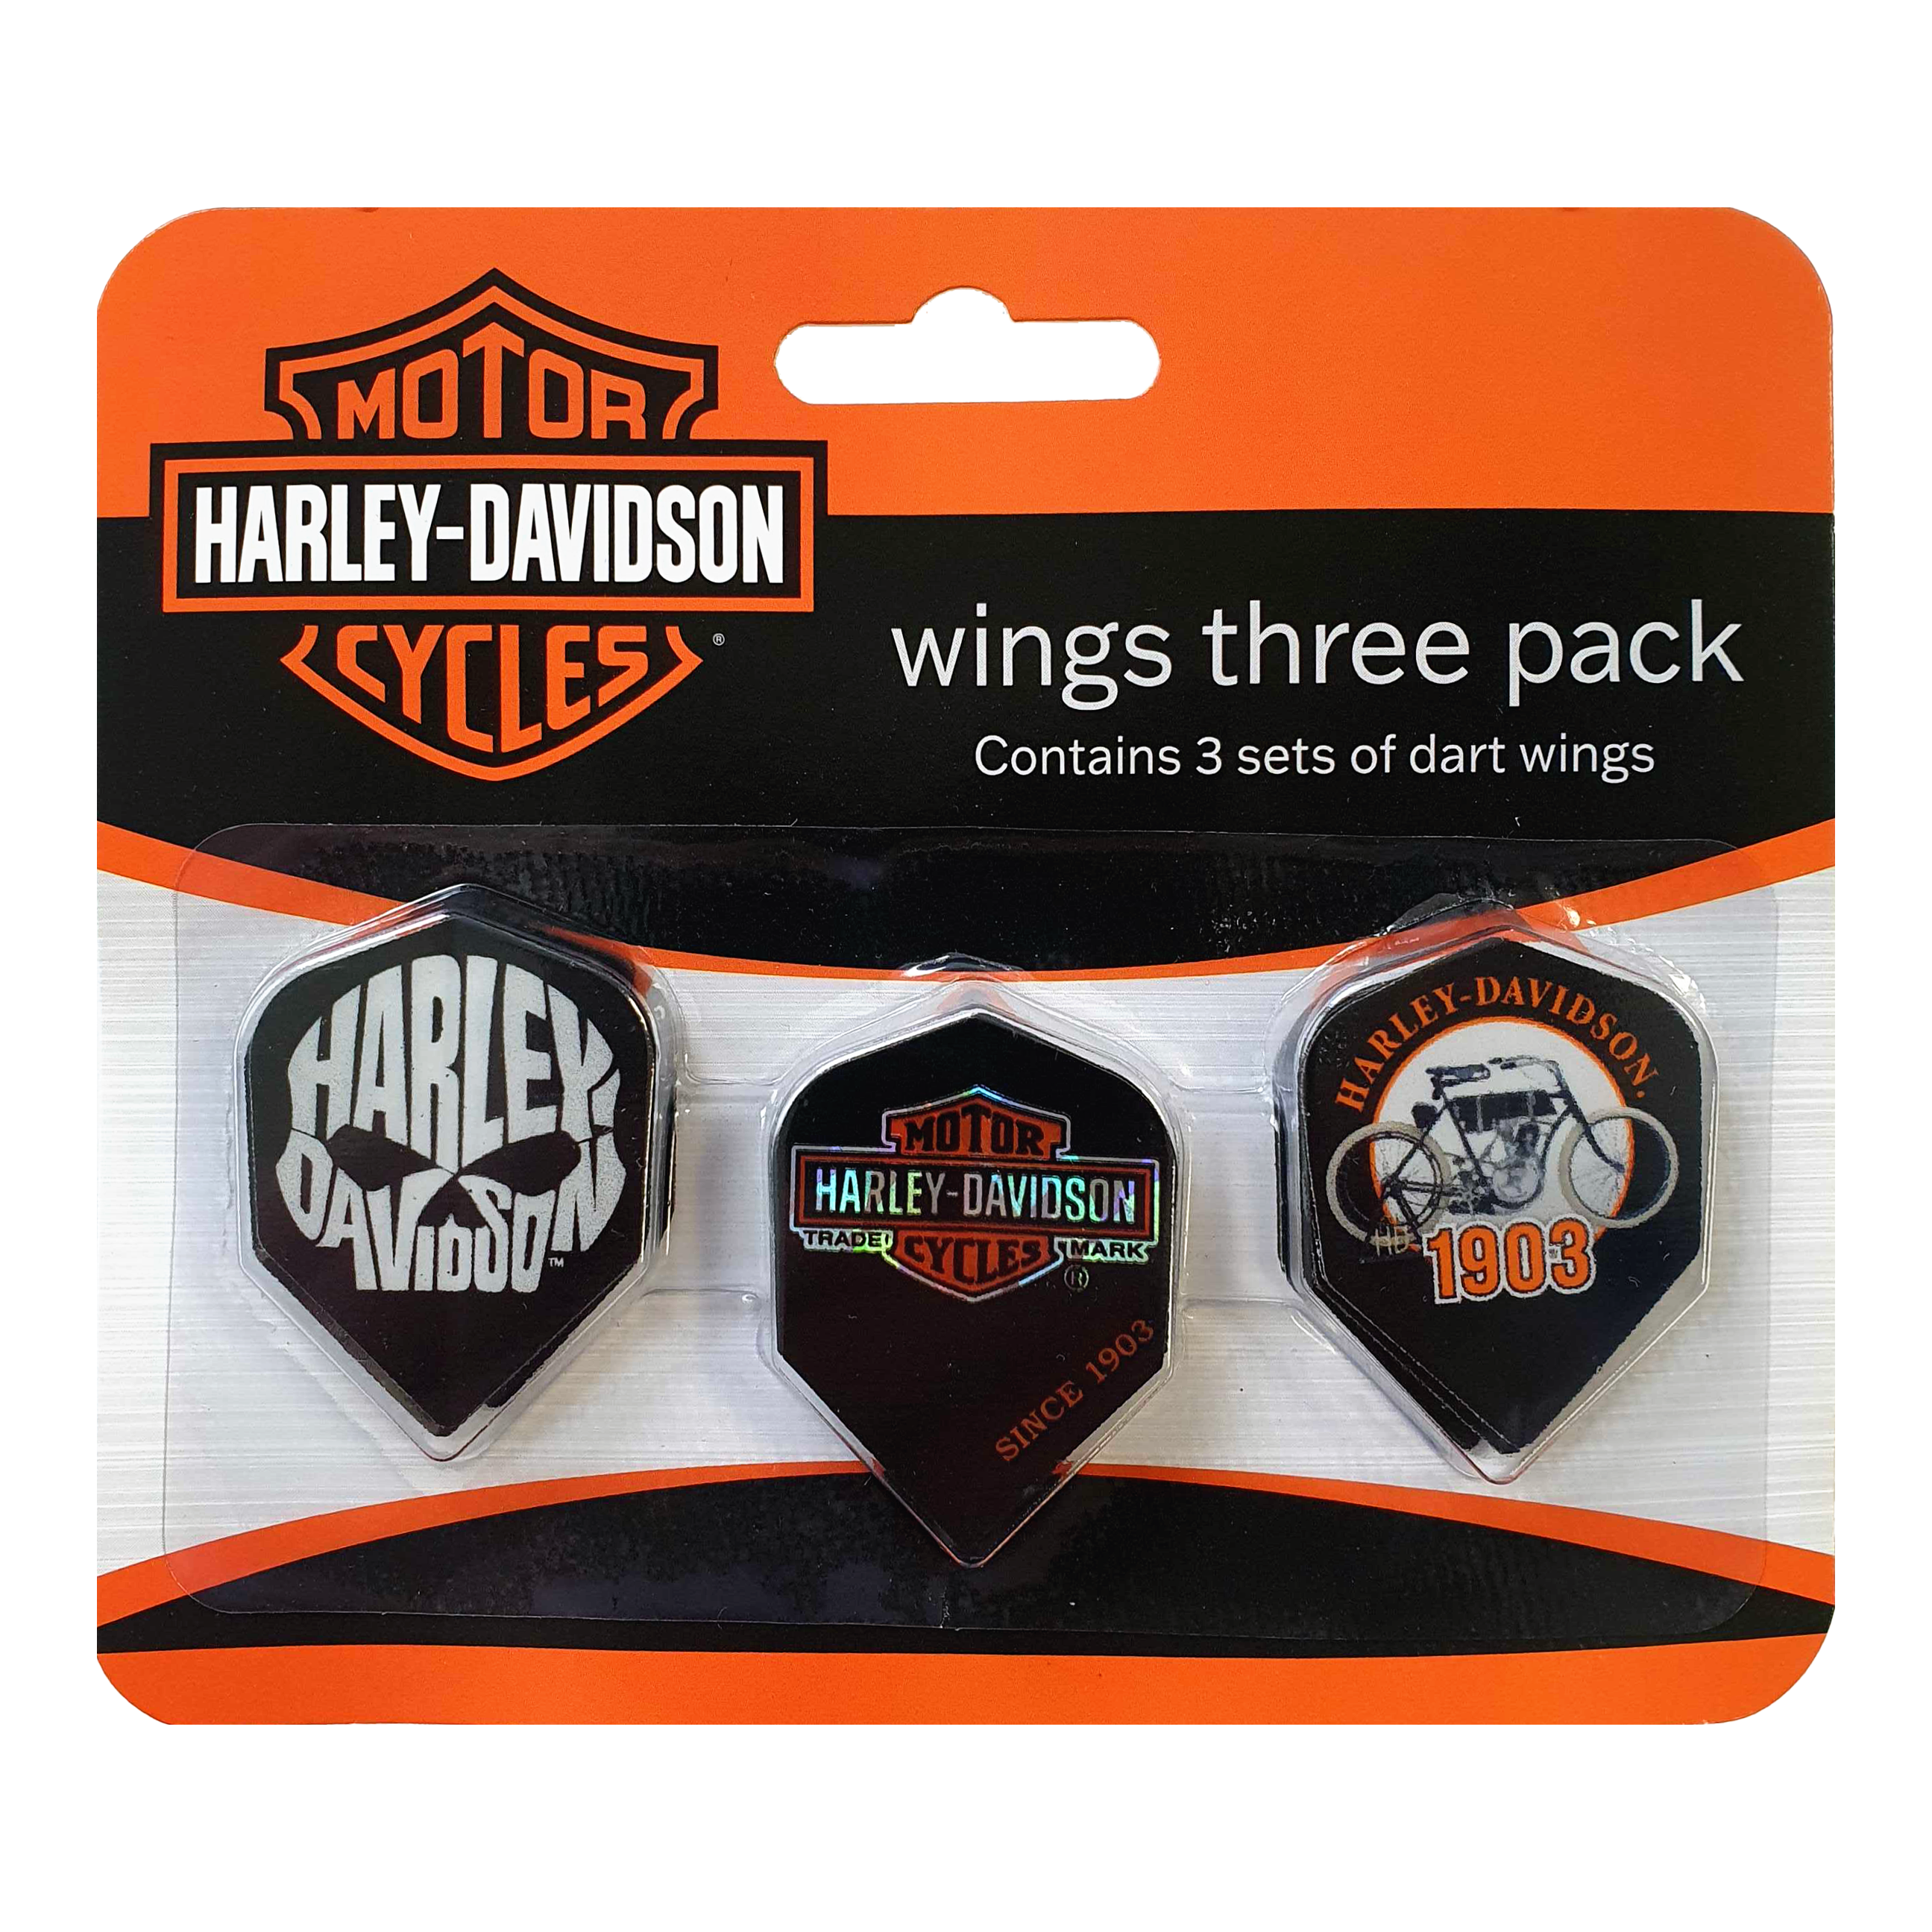 Paquete de vuelo Harley-Davidson Wings No2